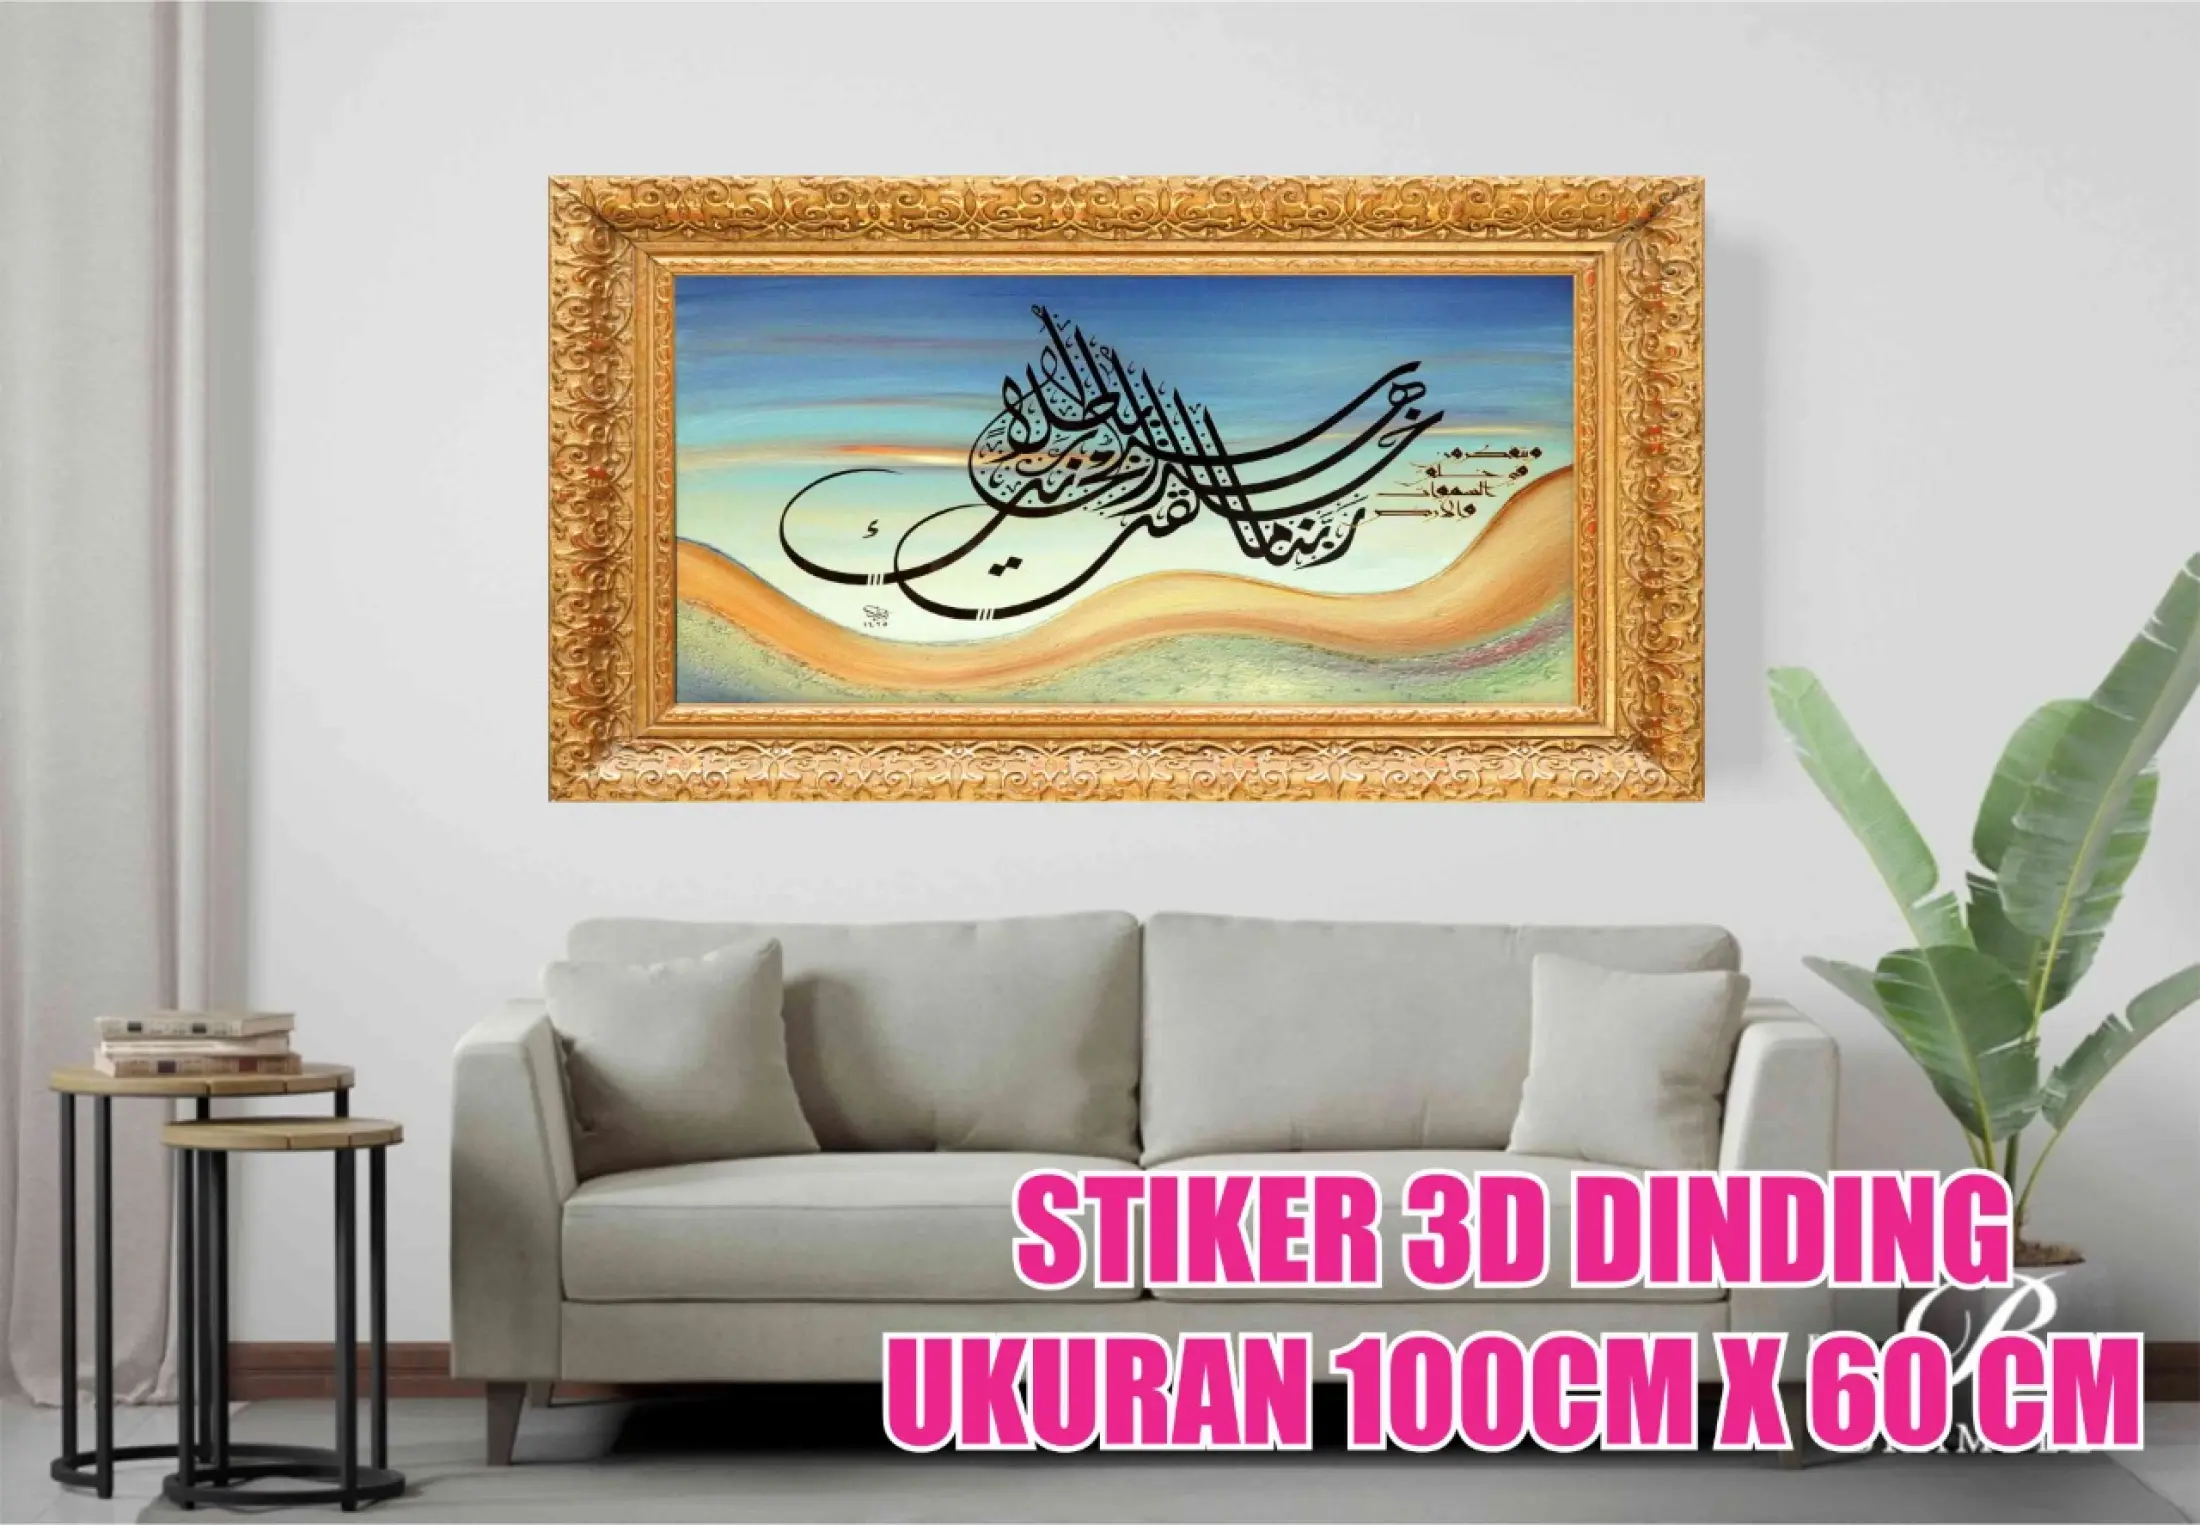 Termurah Wallpaper Sticker Dinding 3d Islami Dekorasi Rumah Kaligrafi Masjid Ukuran 100cmx60cm Lazada Indonesia